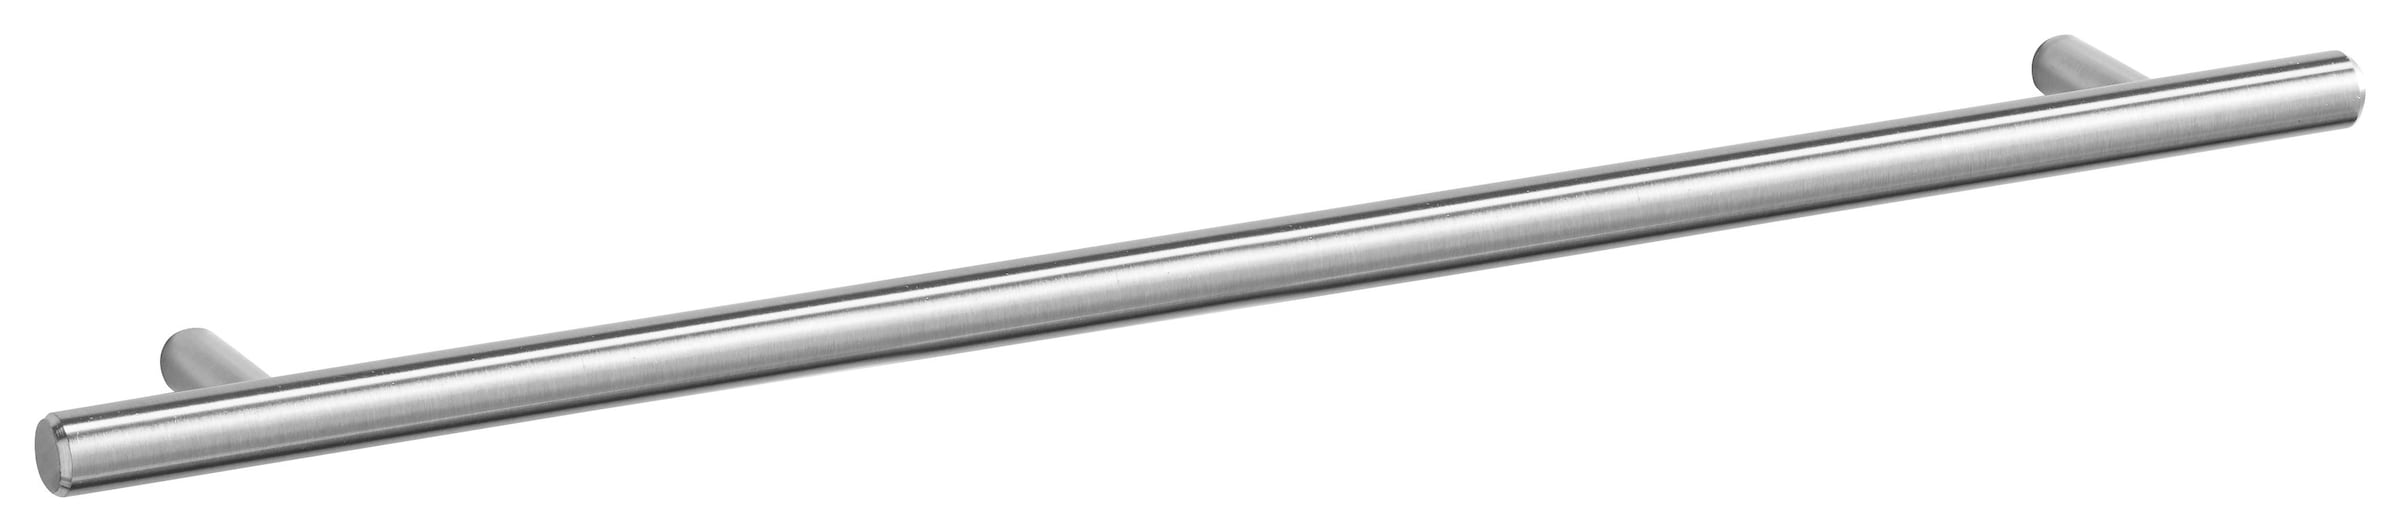 OPTIFIT Hängeschrank »Bern«, Breite 40 cm, 70 cm hoch, mit 1 Tür, mit  Metallgriff kaufen | BAUR